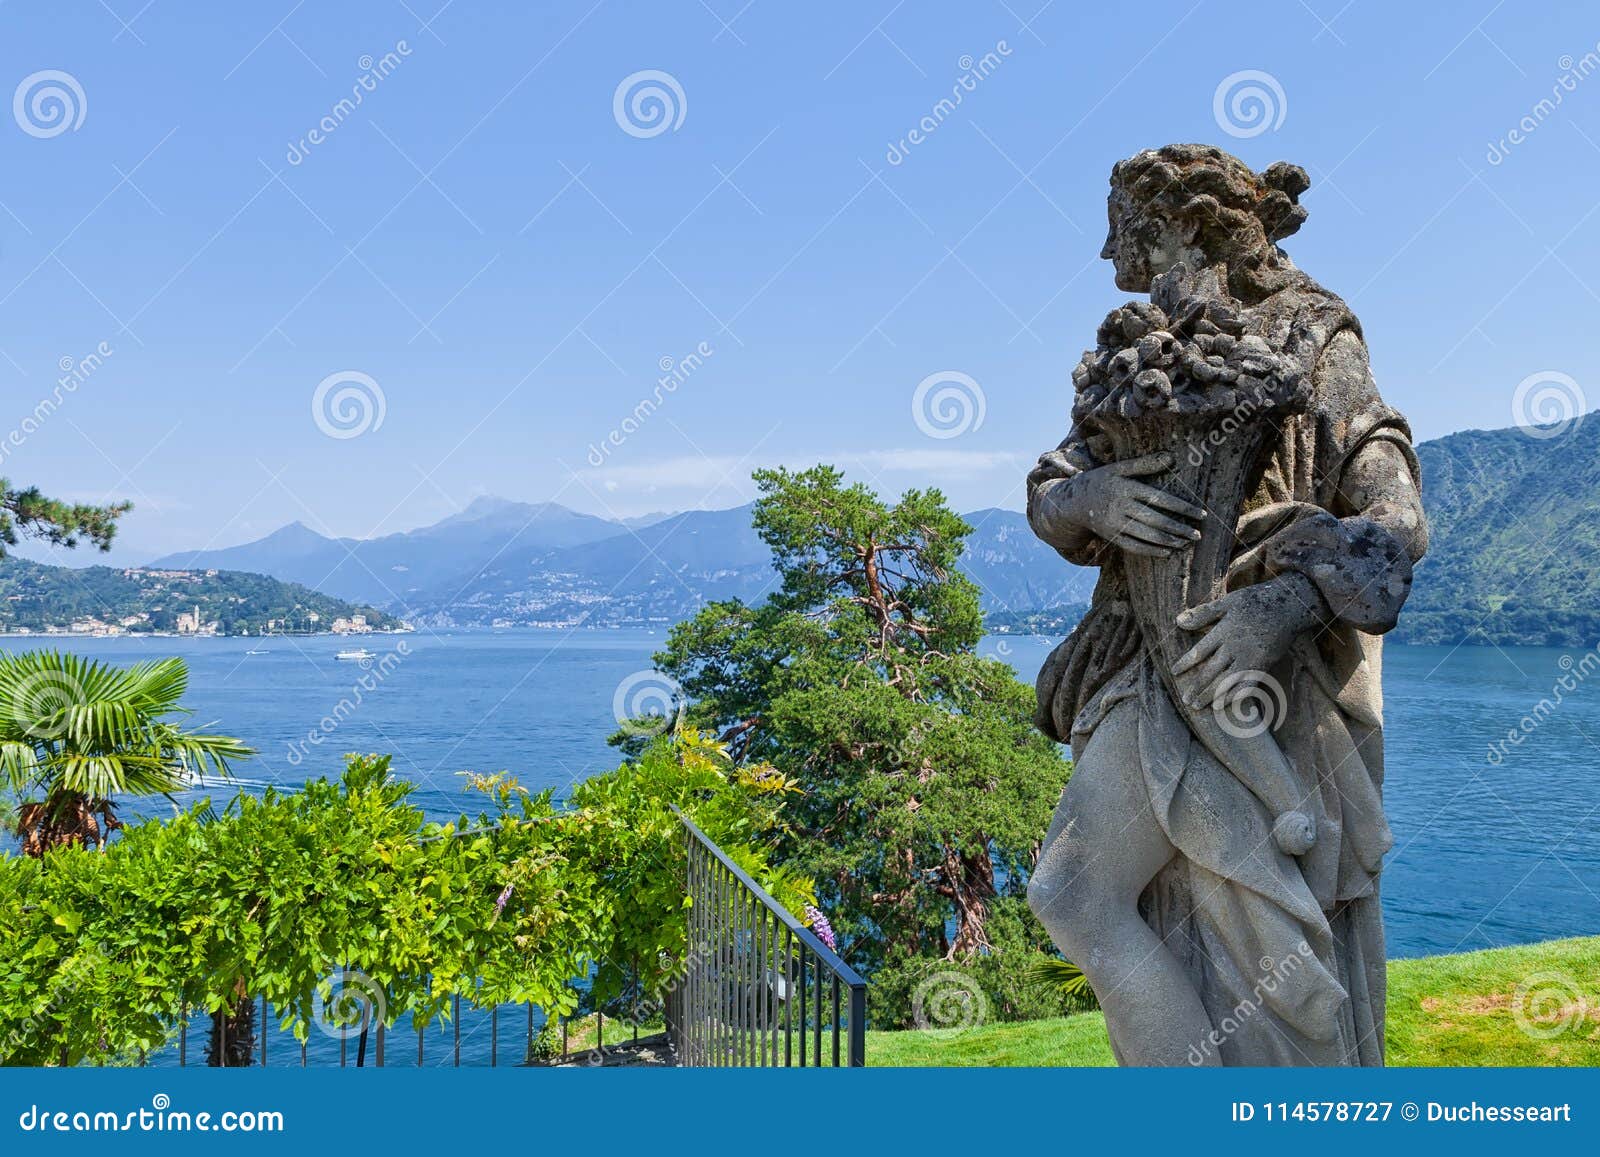 stone statue in the park of villa del balbianello, lenno, lombardia, italy